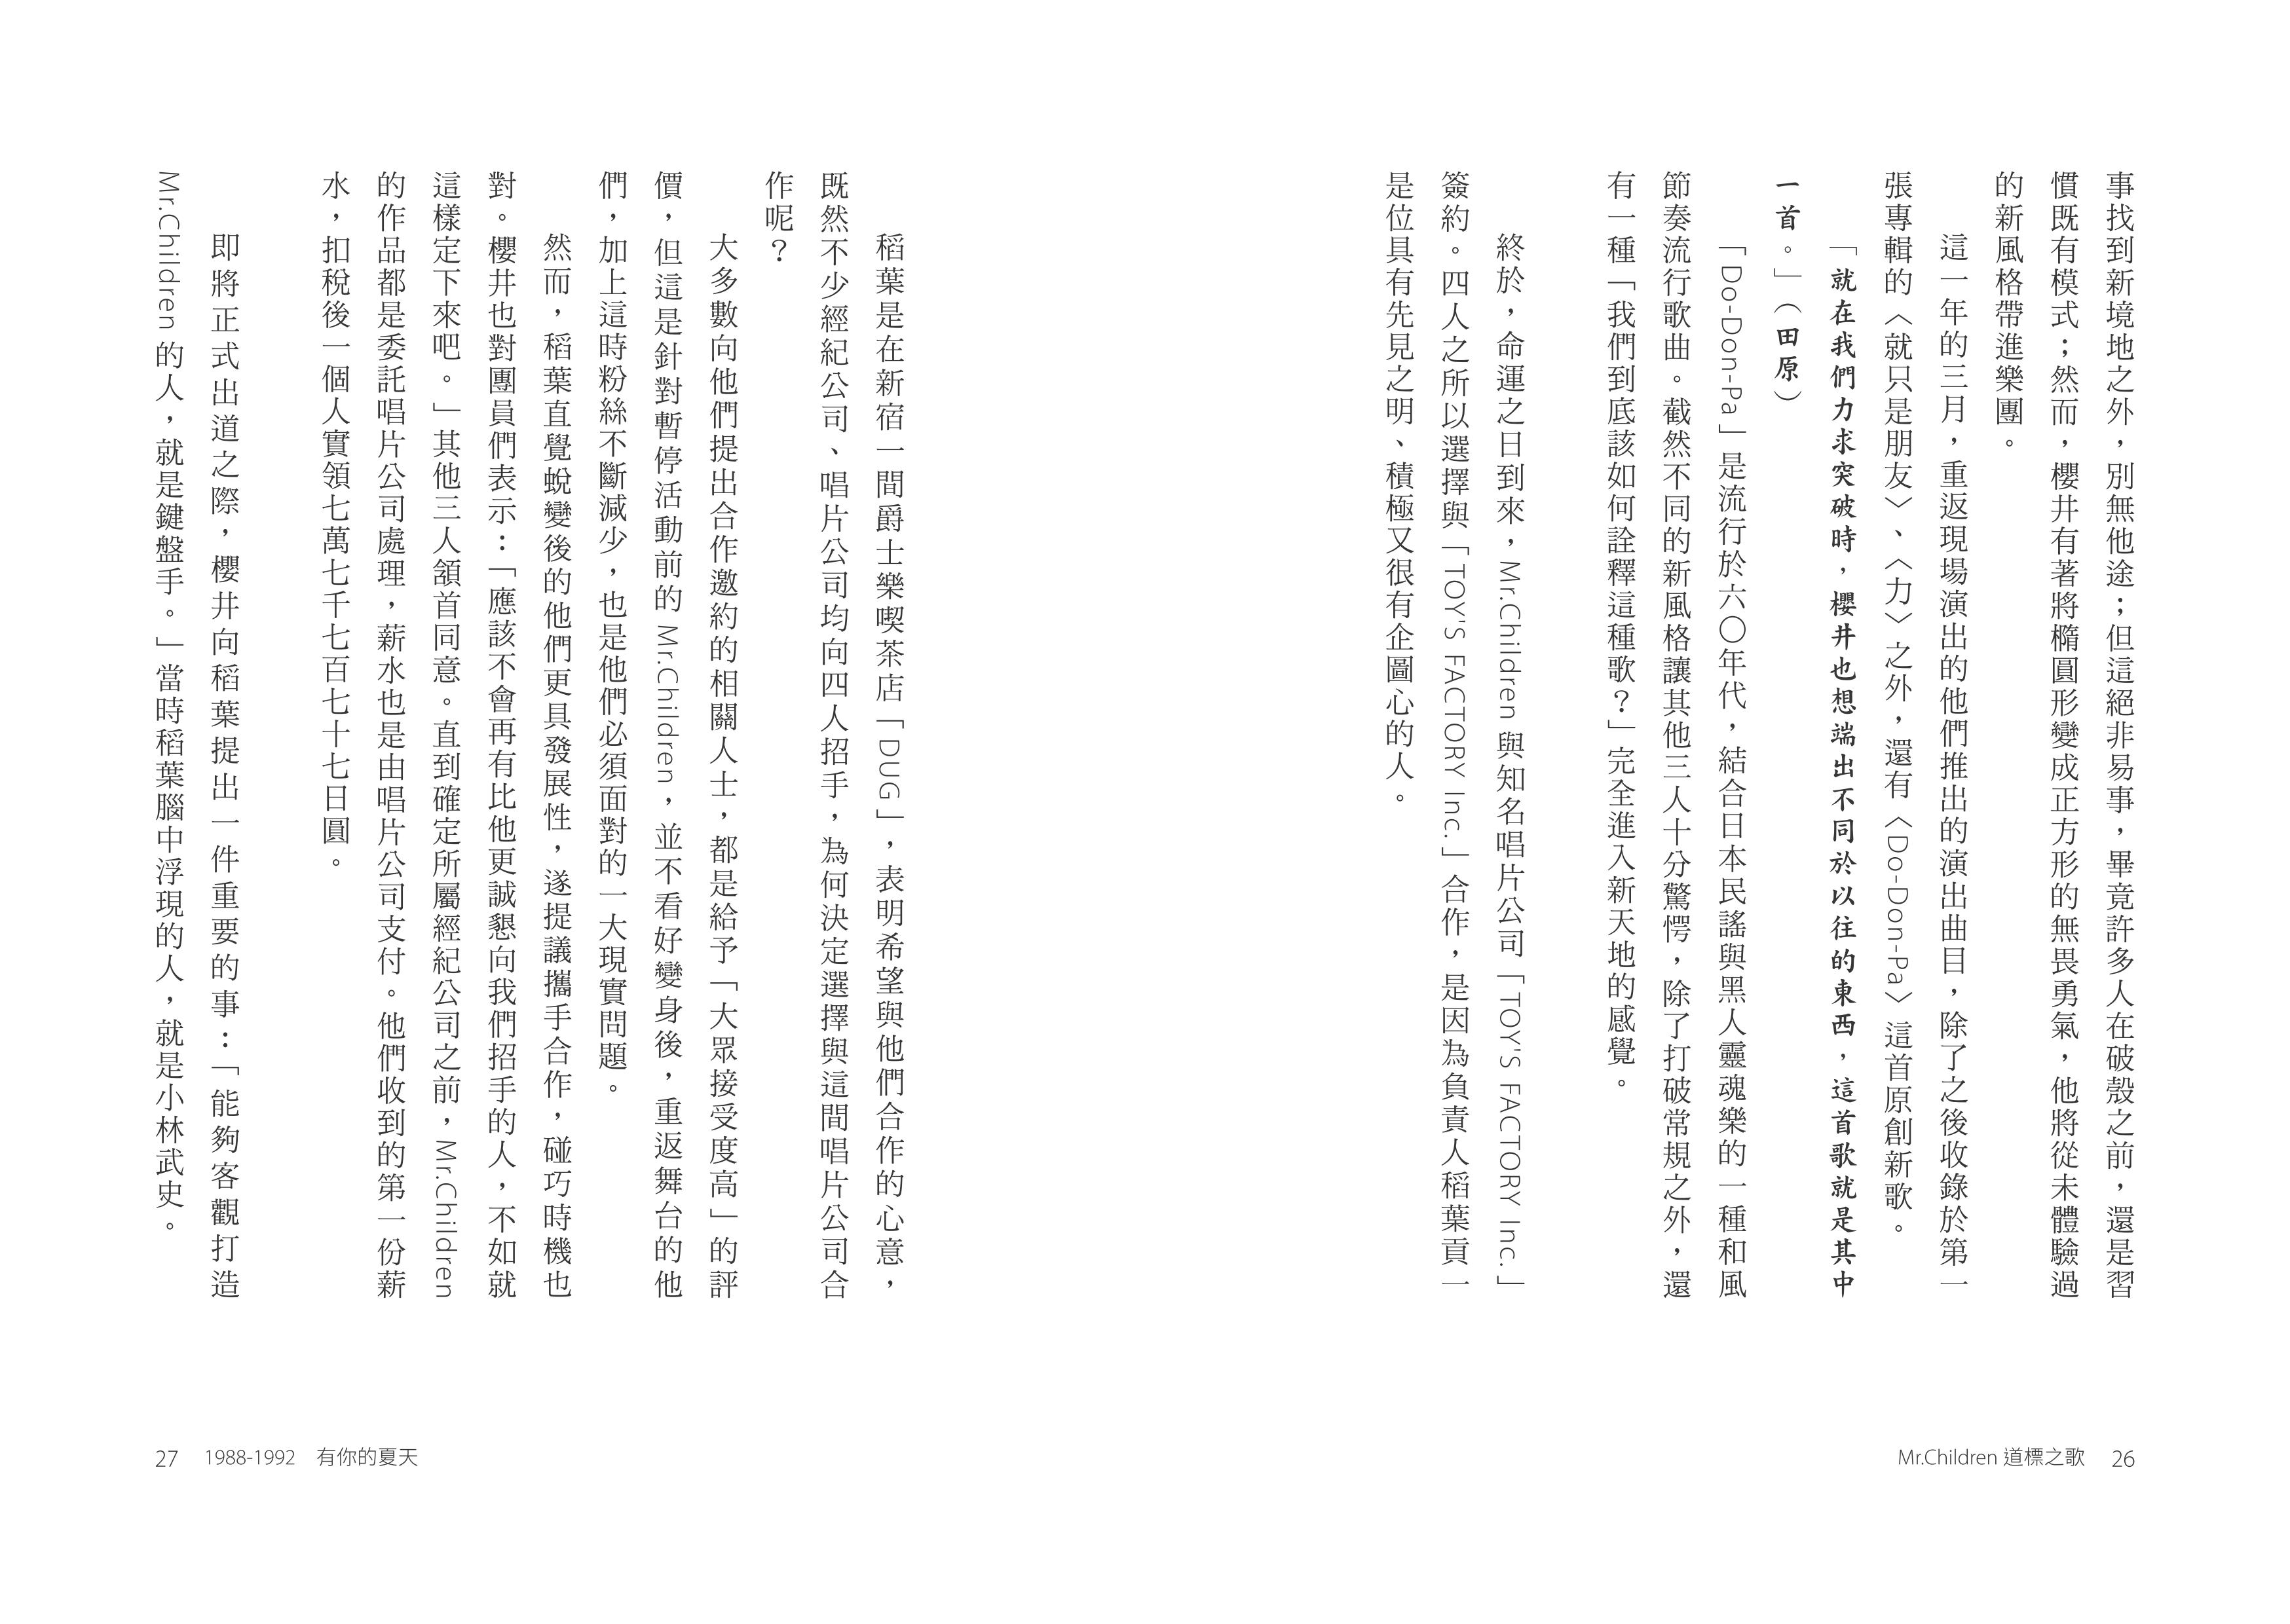 聯經出版事業公司 Mr Children道標之歌 日本國民天團mr Children出道30週年首本文字紀實 特別收錄經典歌詞中文版